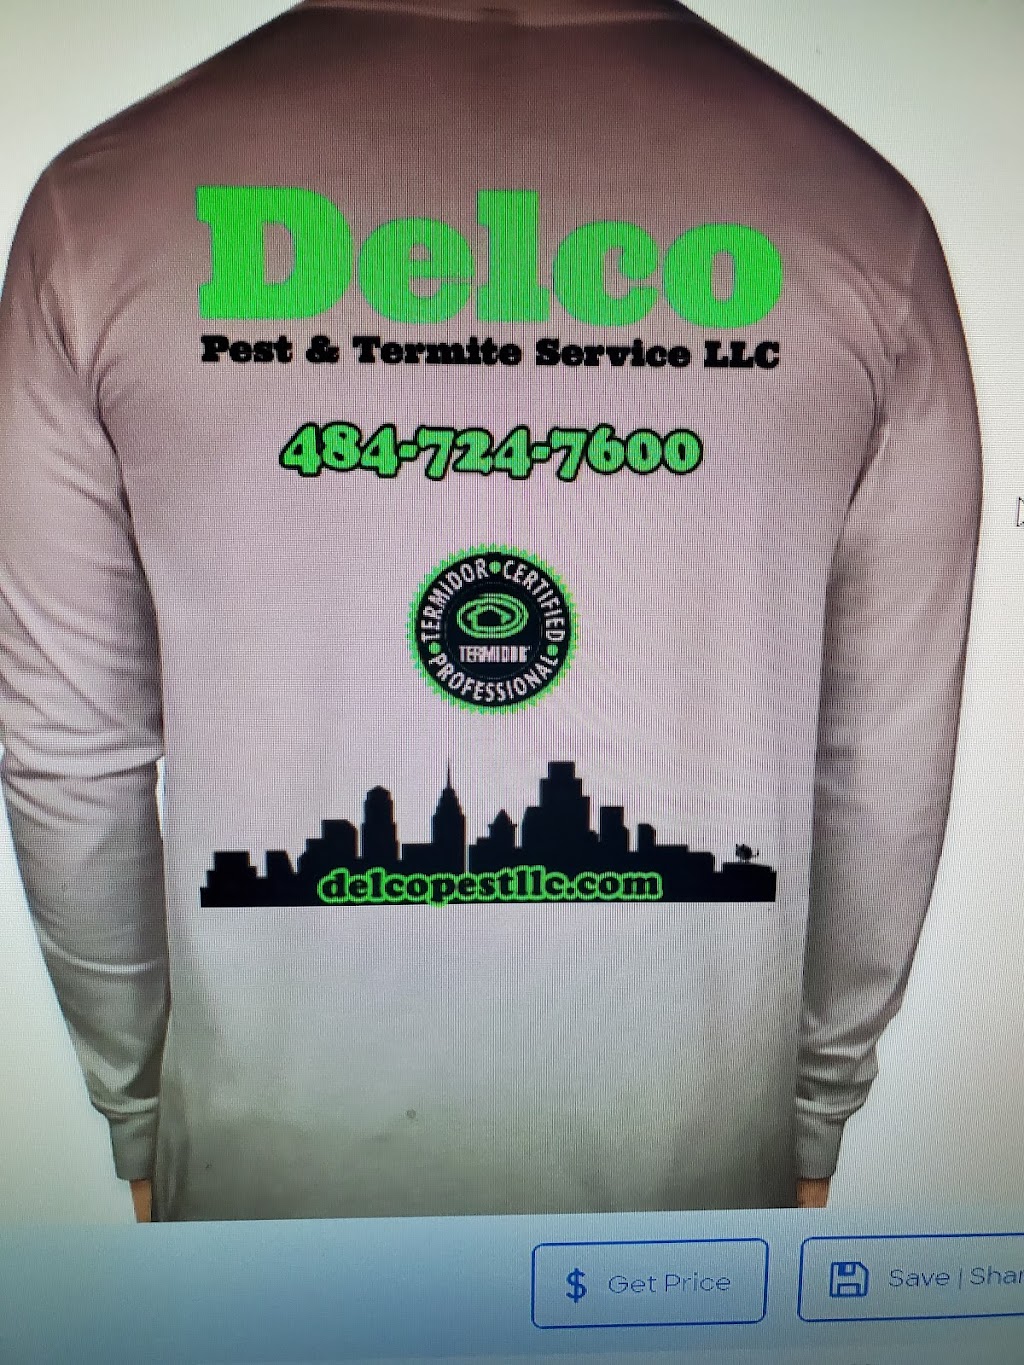 Delco Pest & Termite Service LLC | Concord Rd, Broomall, PA 19008 | Phone: (484) 724-7600